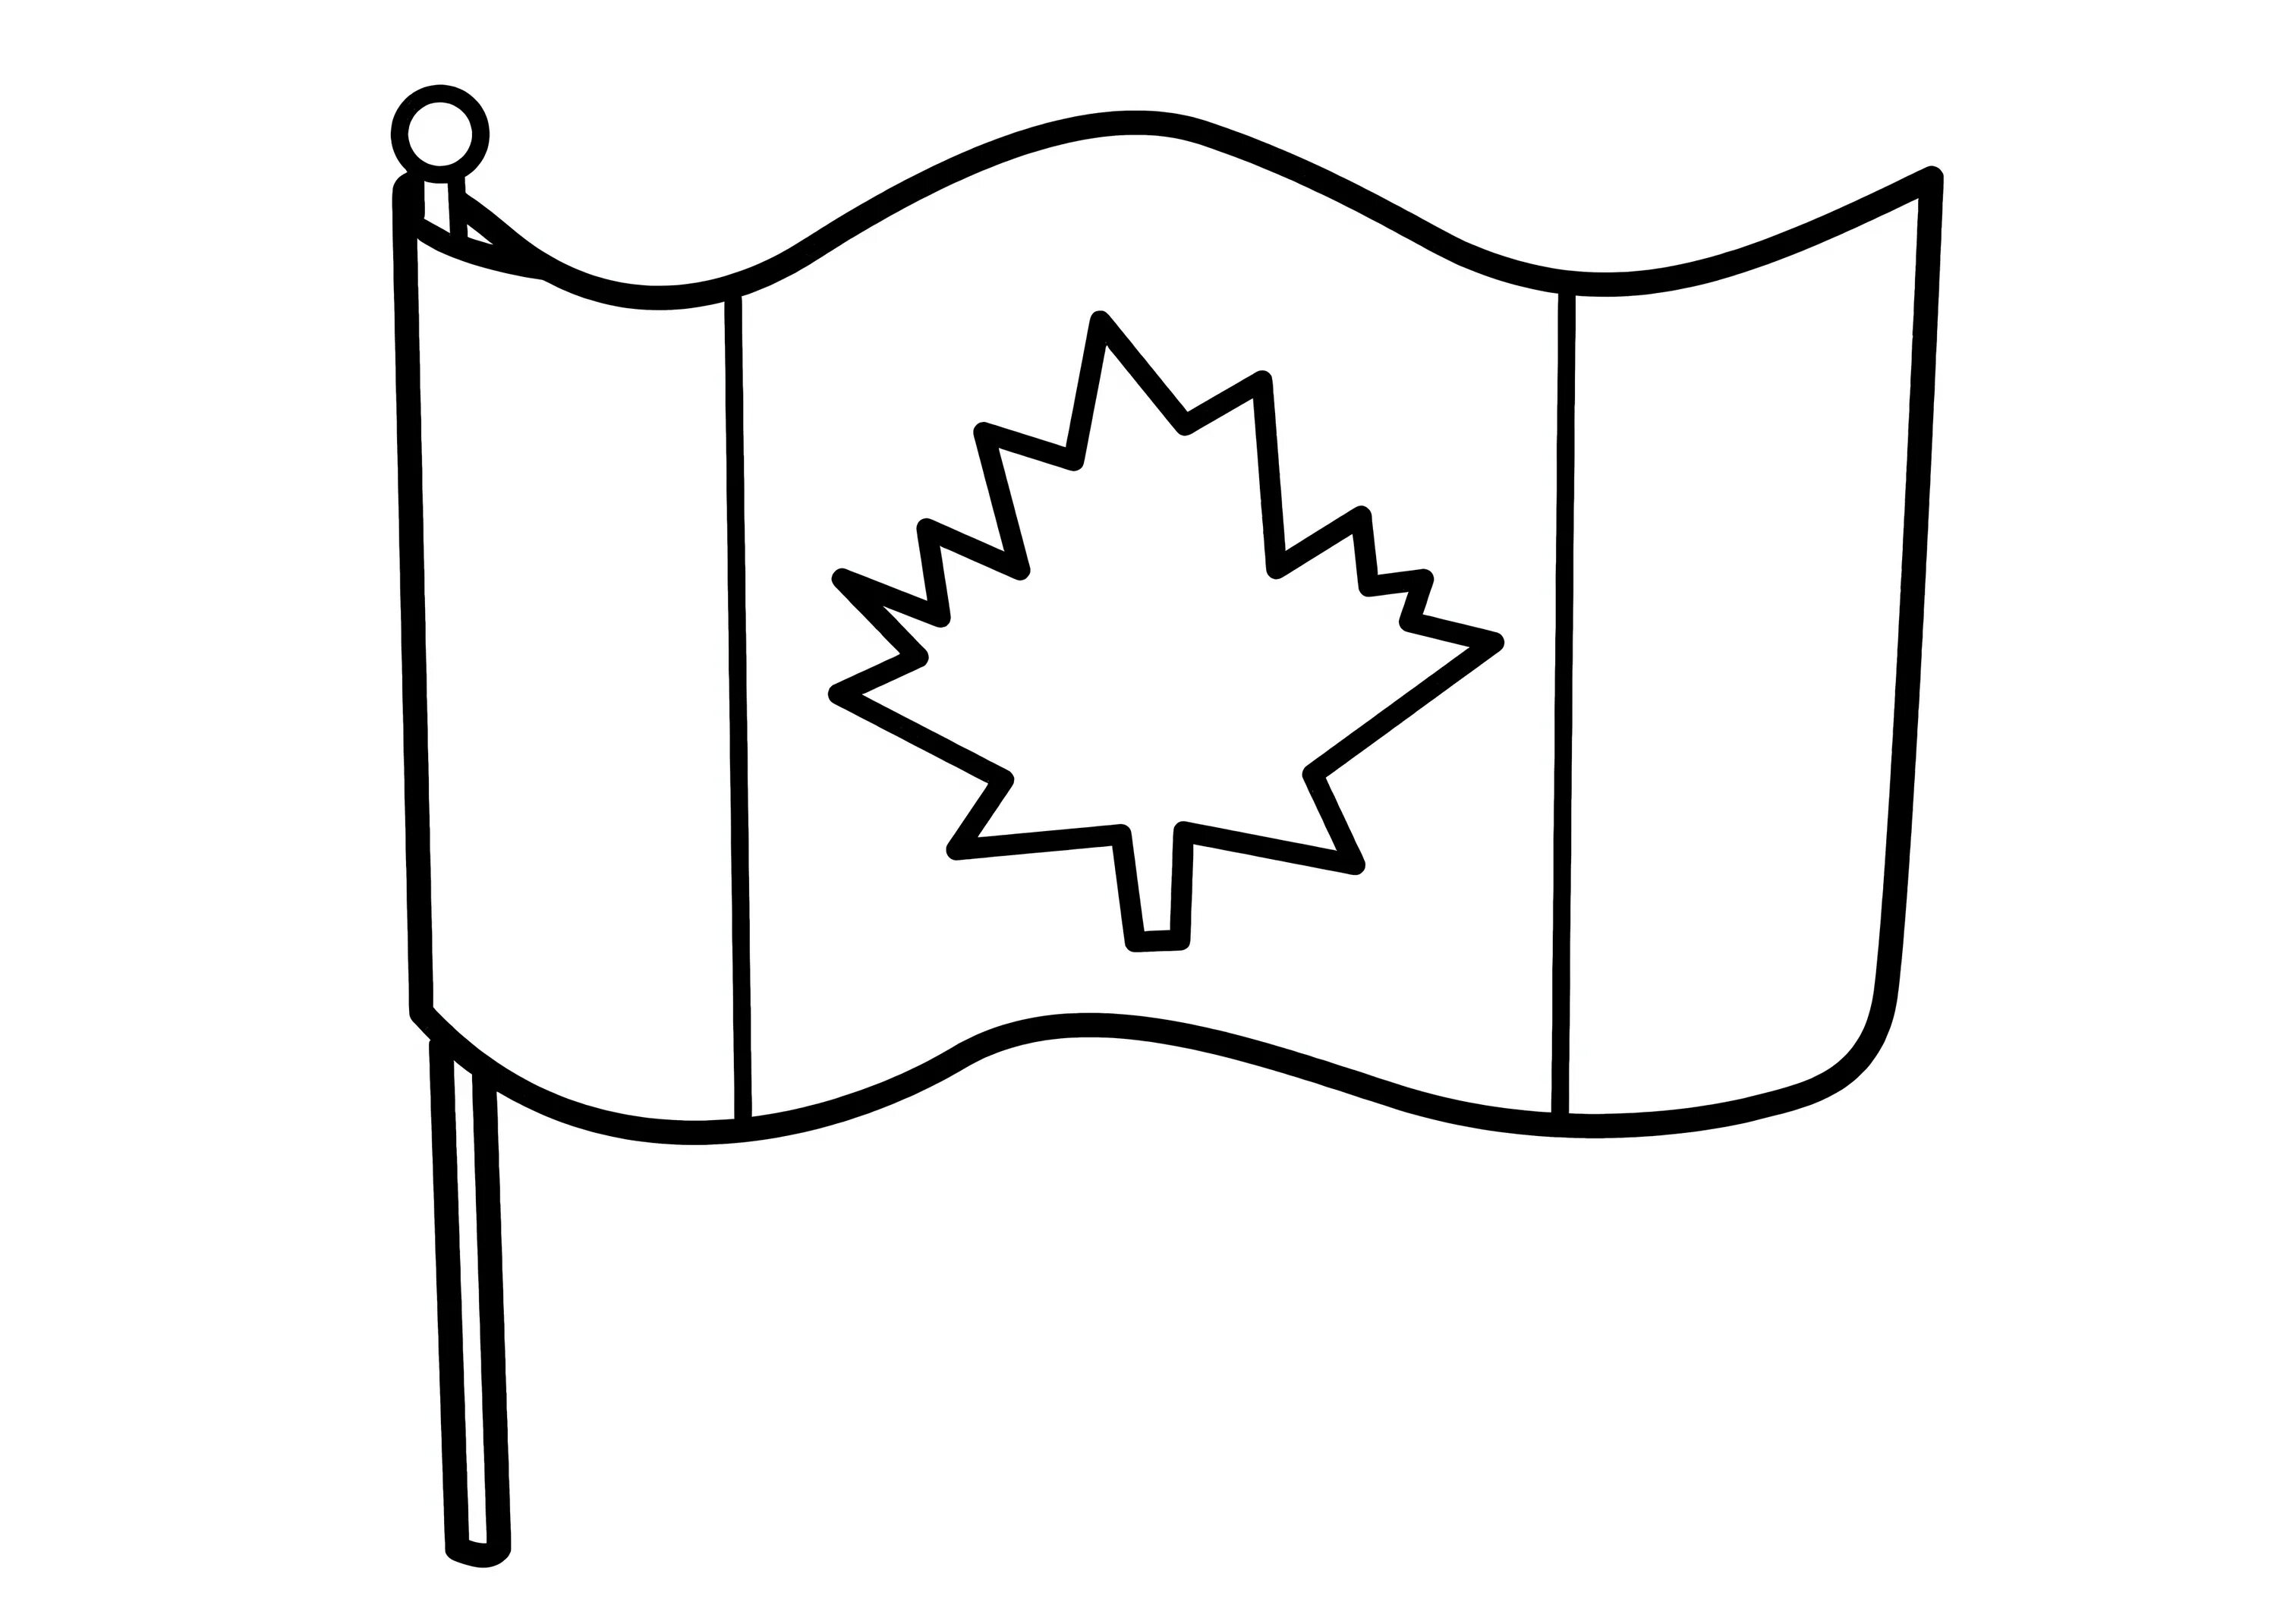 Картинки флаги раскраски. Флаг Канады для раскрашивания. Флаг Канады раскраска для детей. Флаг Канады разукрашка. Флаг Канады для раскрашивания детям.